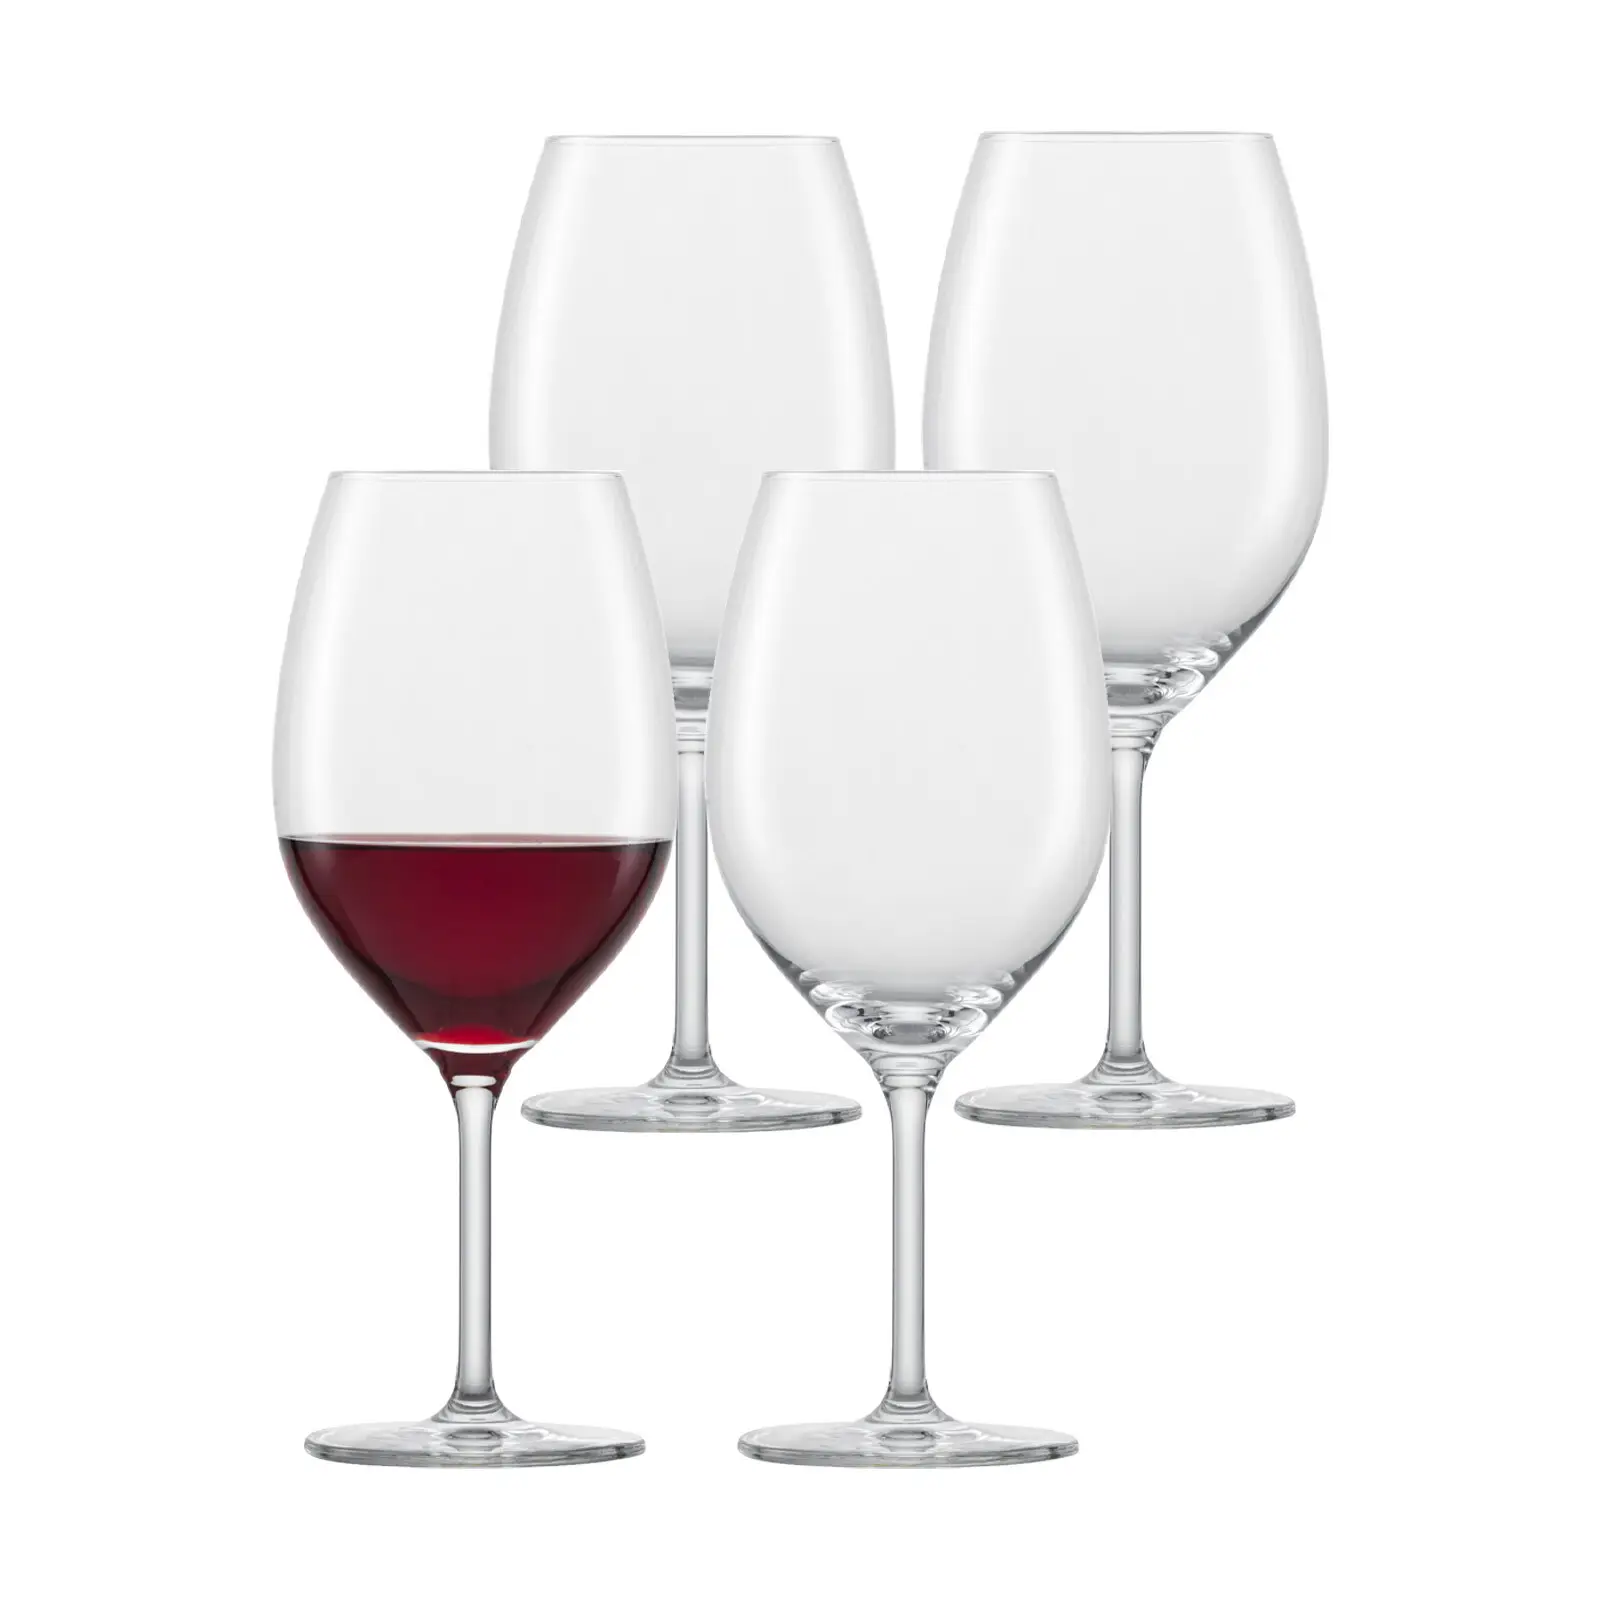 For Bordeaux you 4er Rotweinglas Set